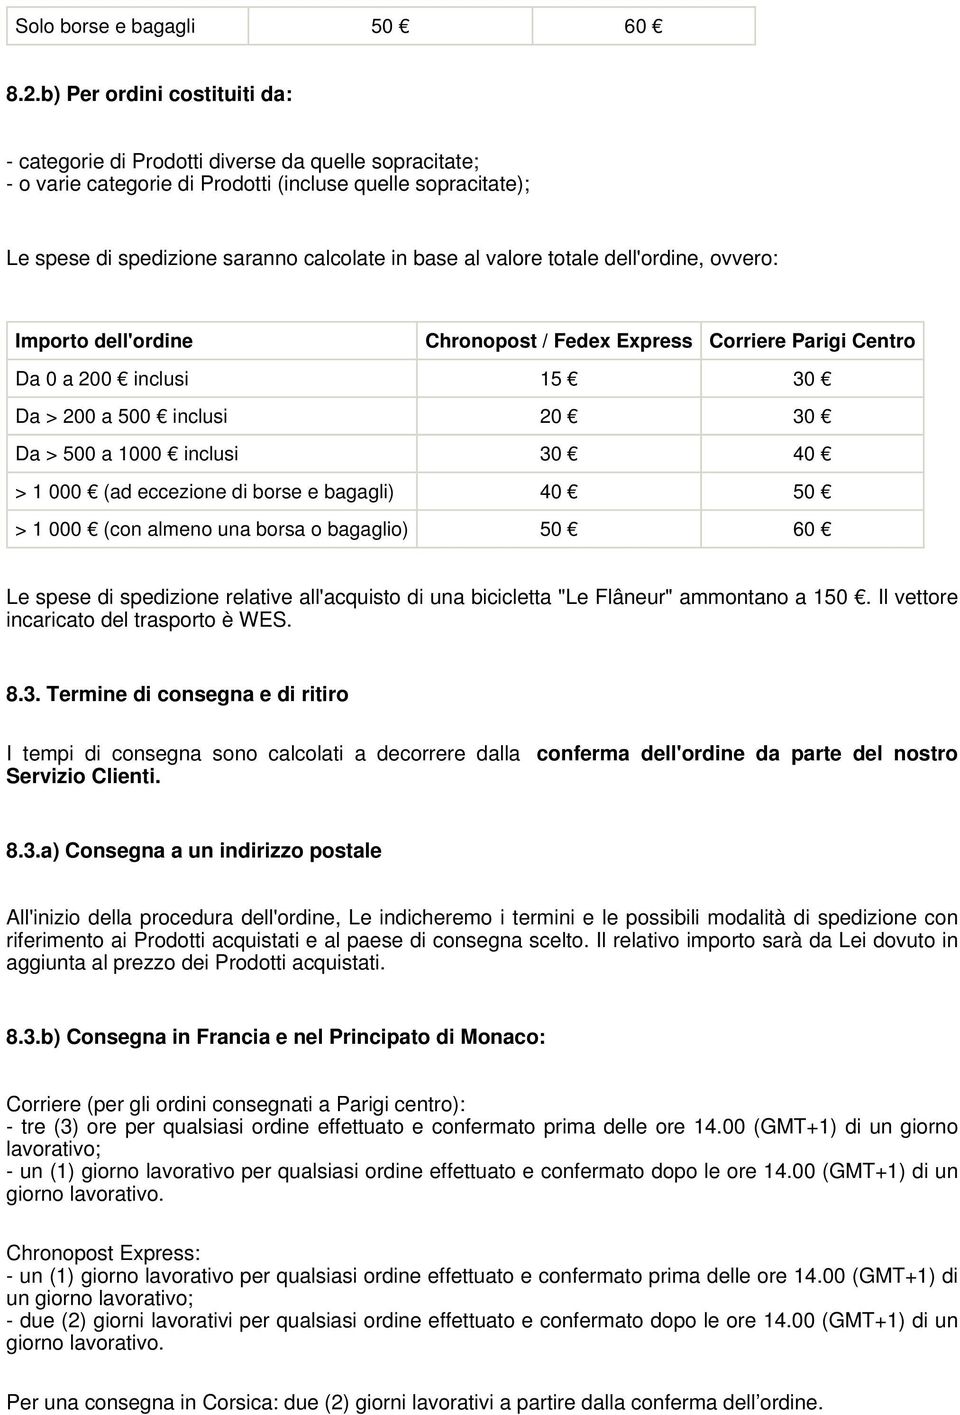 valore totale dell'ordine, ovvero: Importo dell'ordine Chronopost / Fedex Express Corriere Parigi Centro Da 0 a 200 inclusi 15 30 Da > 200 a 500 inclusi 20 30 Da > 500 a 1000 inclusi 30 40 > 1 000